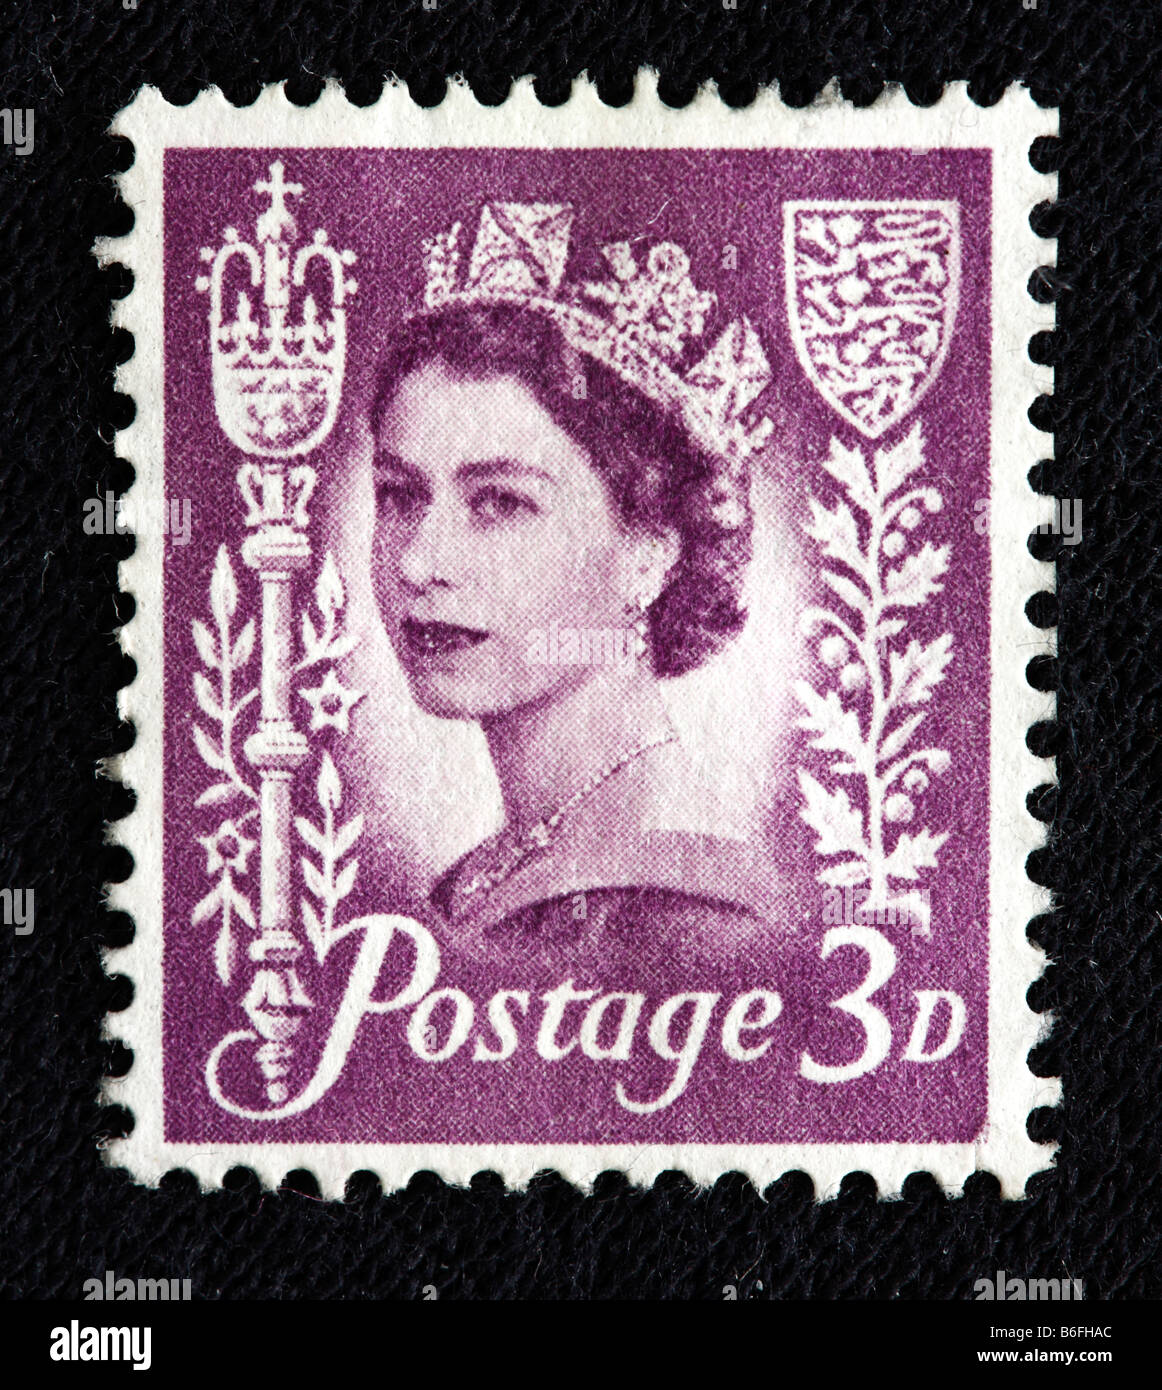 La reine Elizabeth II du Royaume-Uni (1952 à aujourd'hui), timbre-poste, UK Banque D'Images